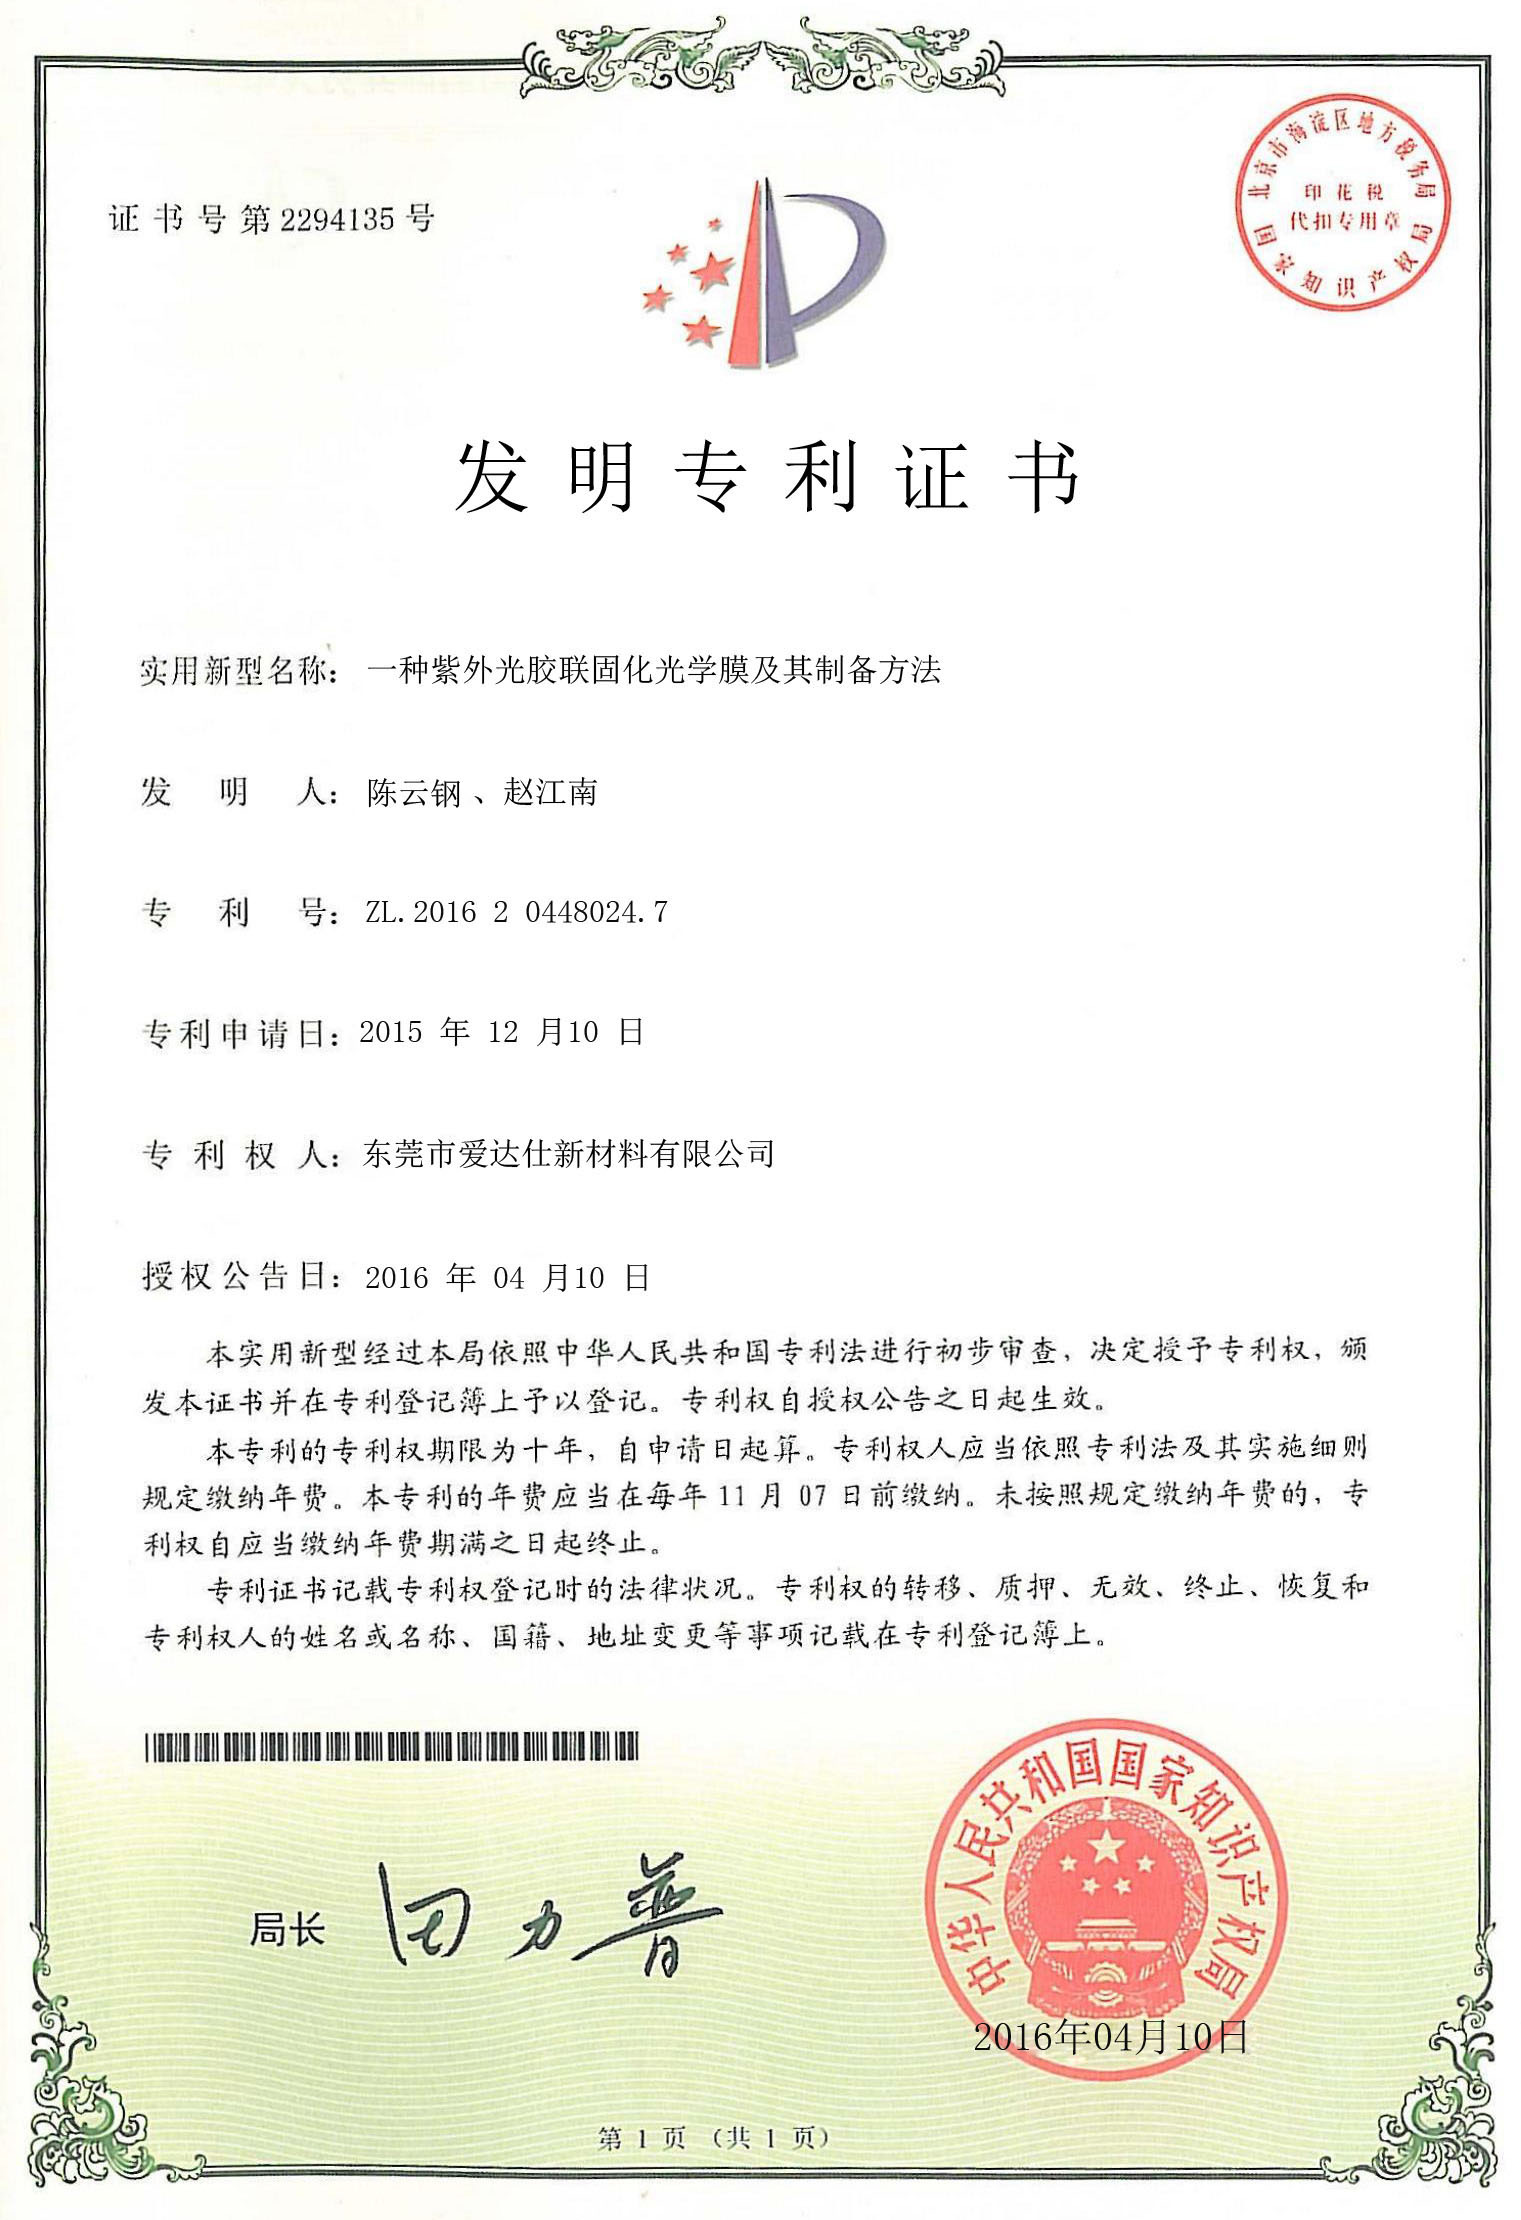 Certified Tablet Manufacturer of tablet pc manufacturer